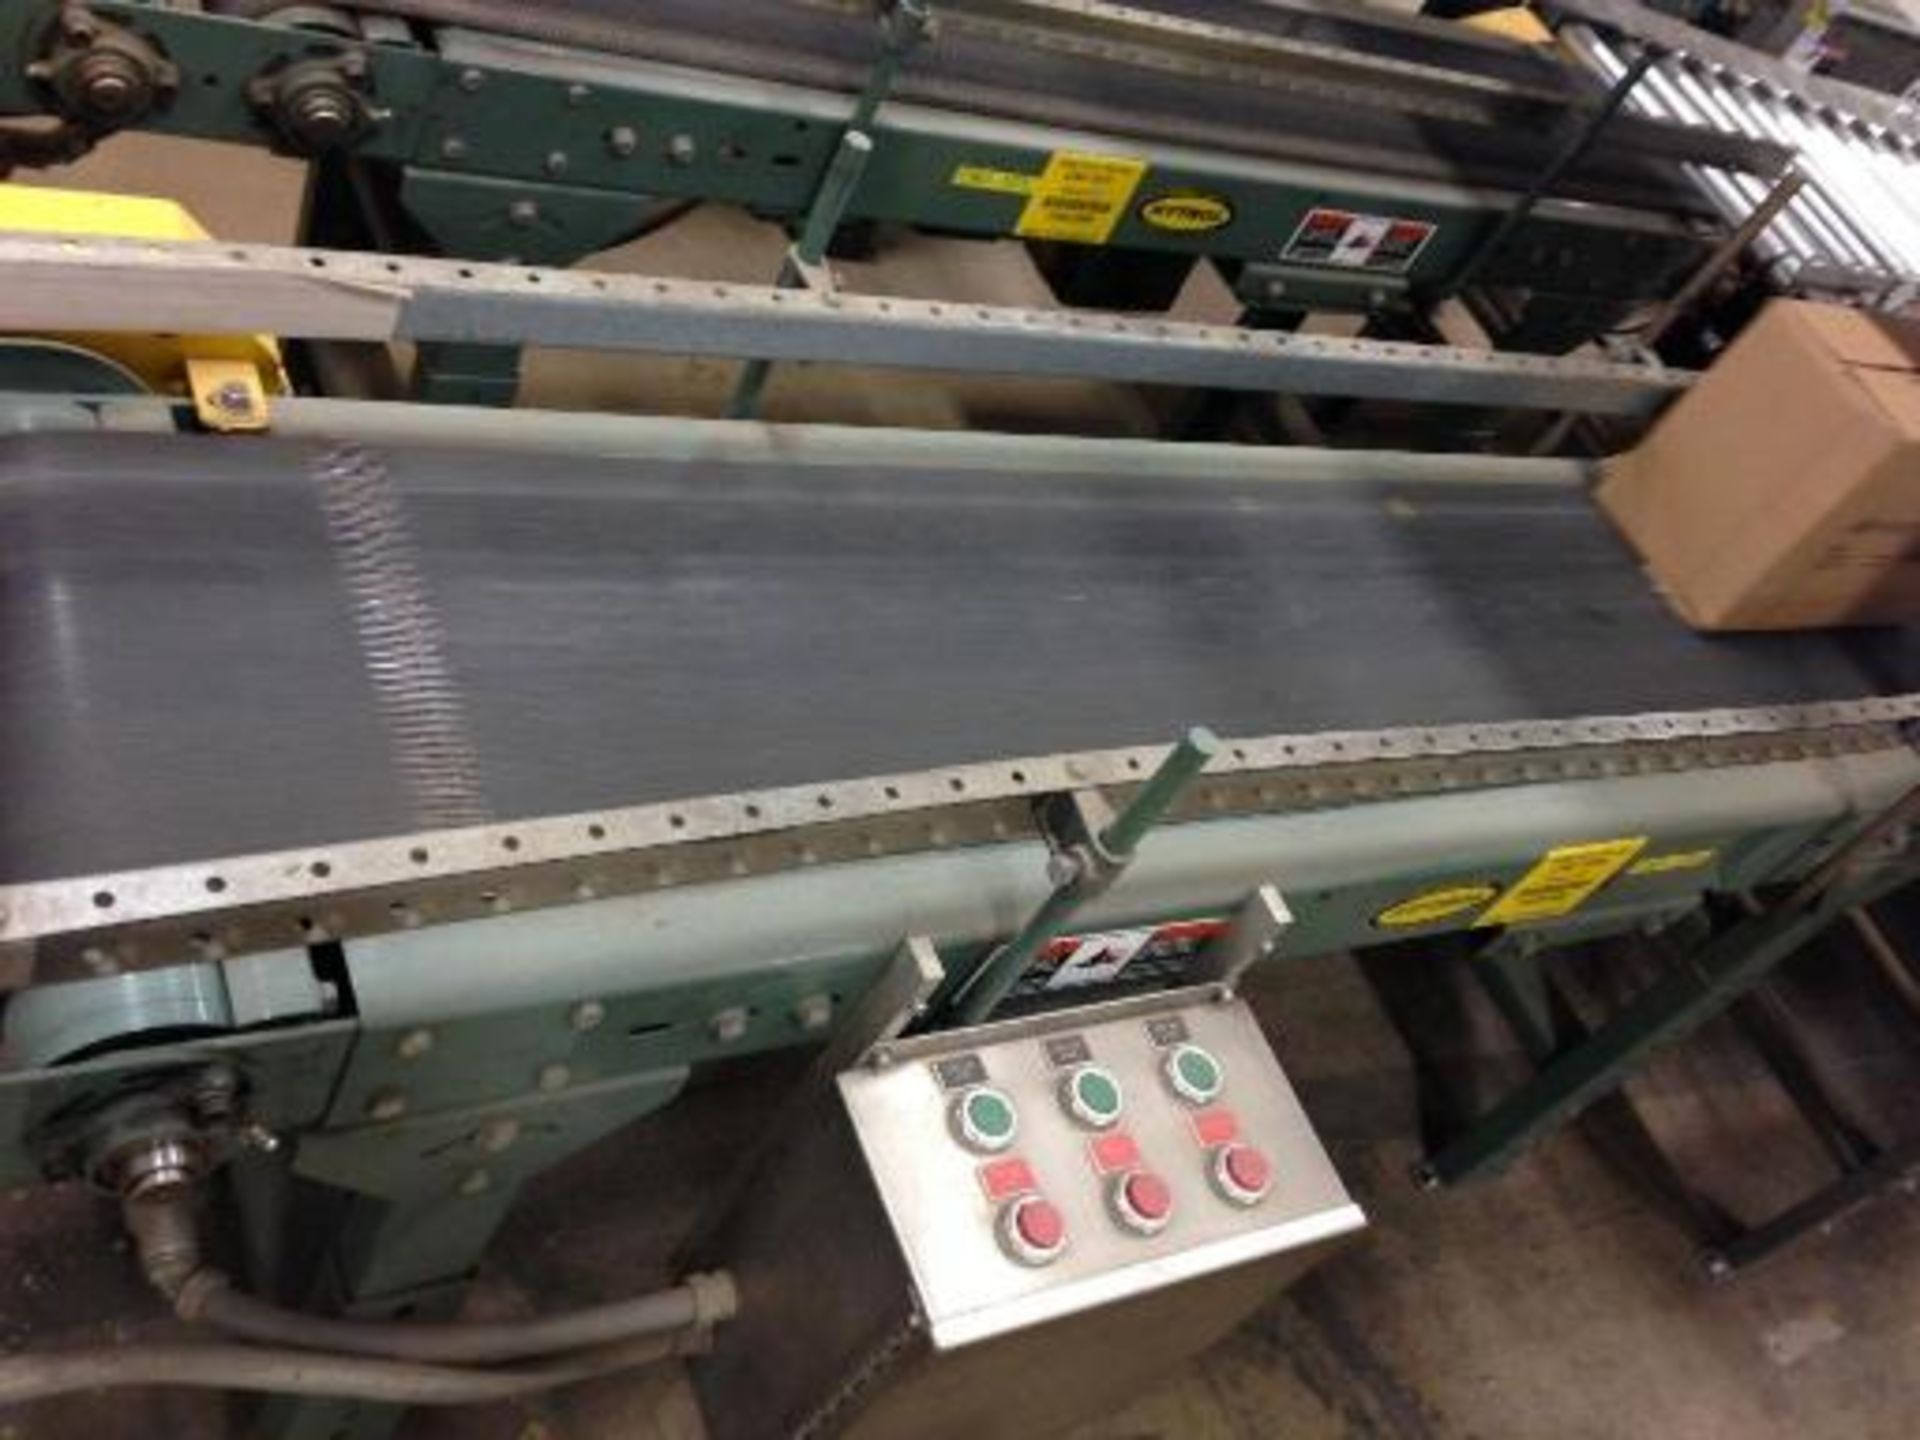 Hytrol belt conveyor16 inch x 5 feet long. Located in Marion, Ohio Rigging Fee: $200